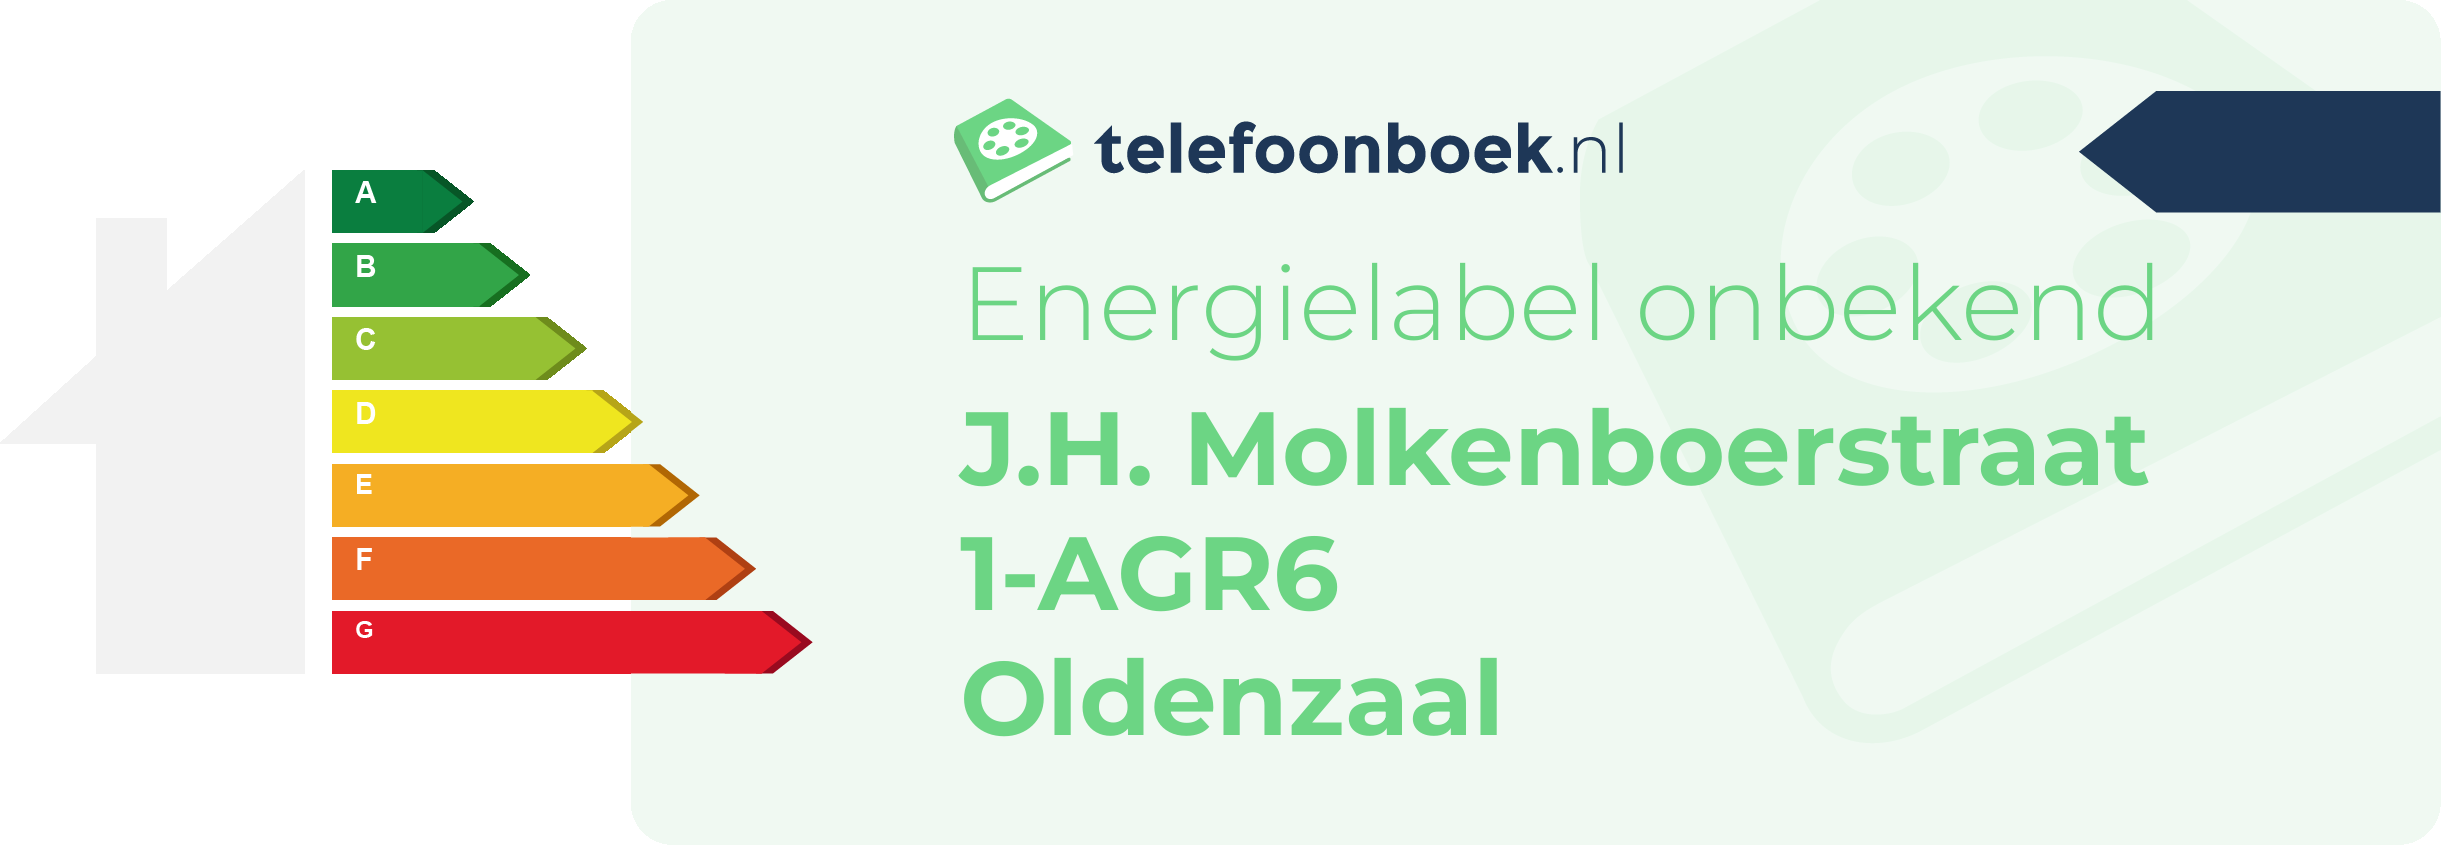 Energielabel J.H. Molkenboerstraat 1-AGR6 Oldenzaal